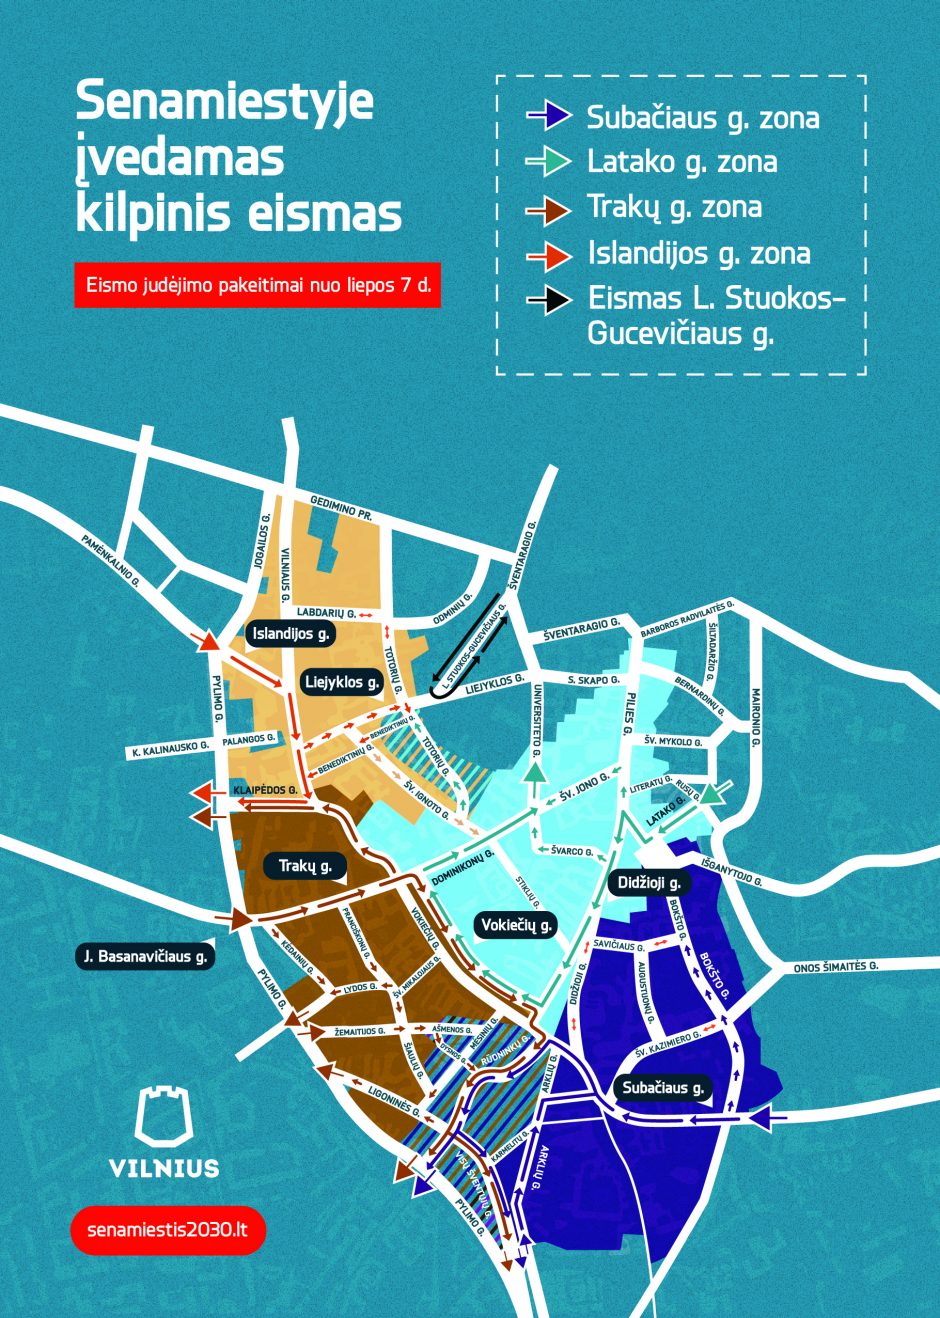 Kodėl Vilniaus senamiestyje reikia kilpinio eismo?